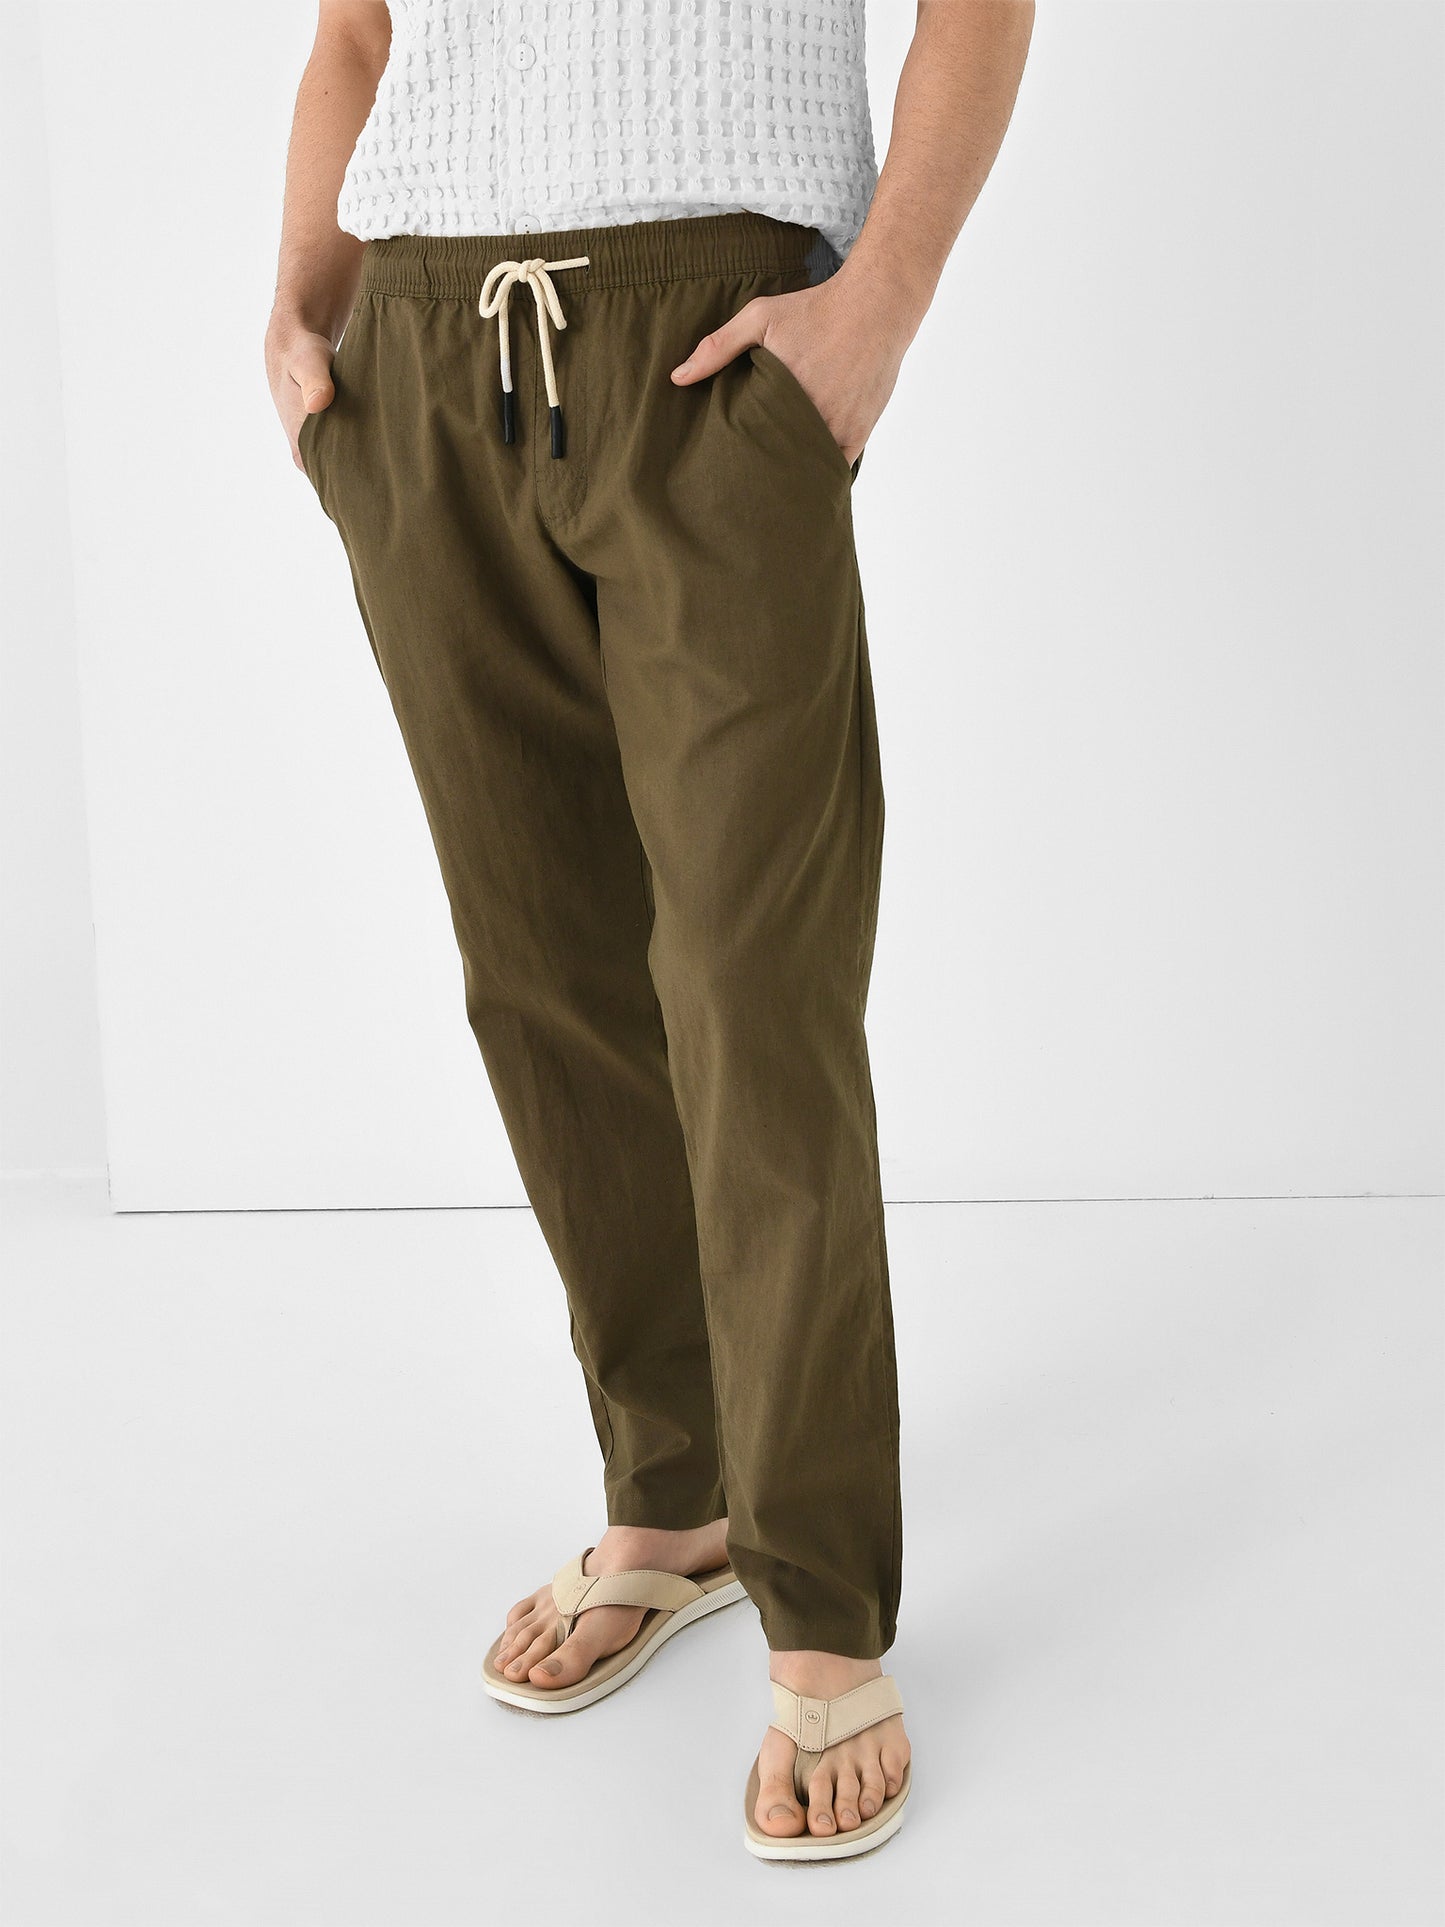 OAS Men's Linen Long Pant